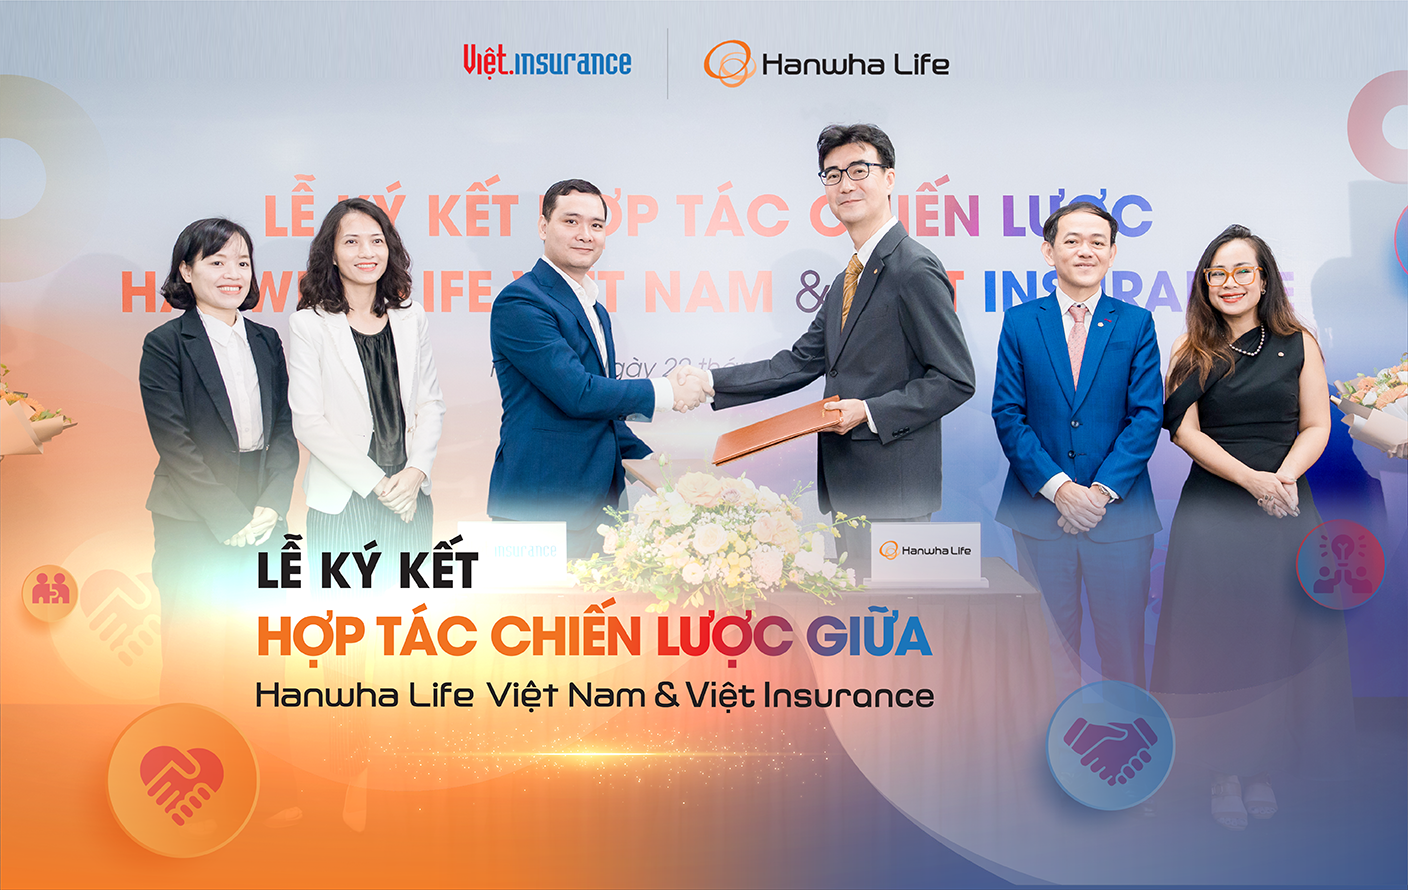 Hanwha Life Việt Nam chính thức ký kết thỏa thuận hợp tác phân phối bảo hiểm nhân thọ với Việt Insurance